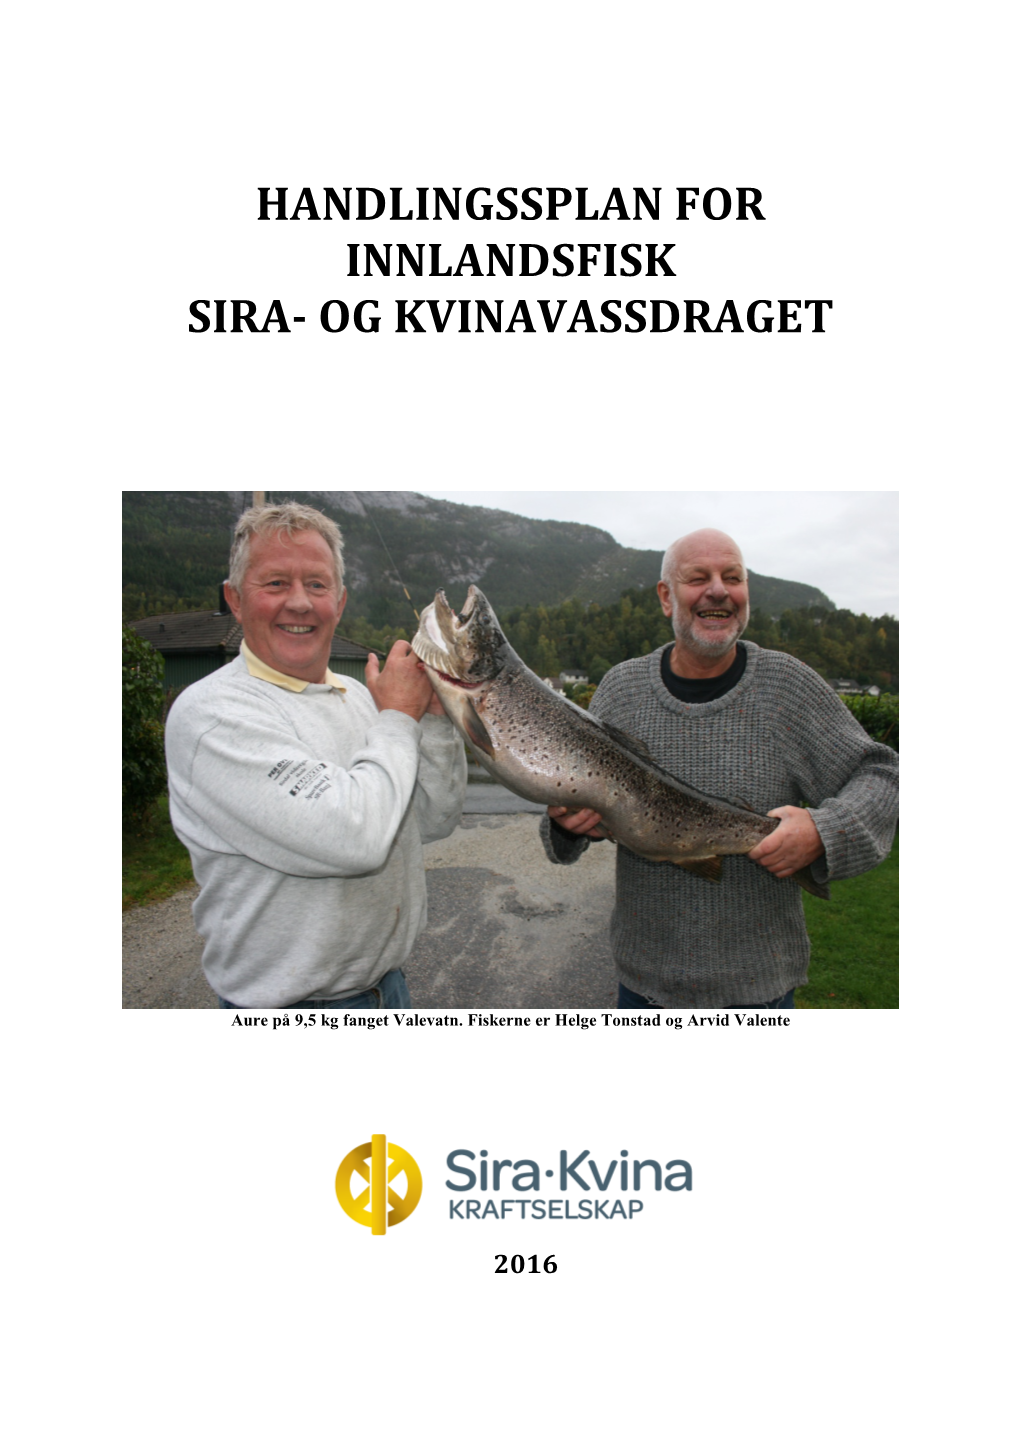 Handlingsplan Innlandsfisk Sira- Og Kvinavassdraget